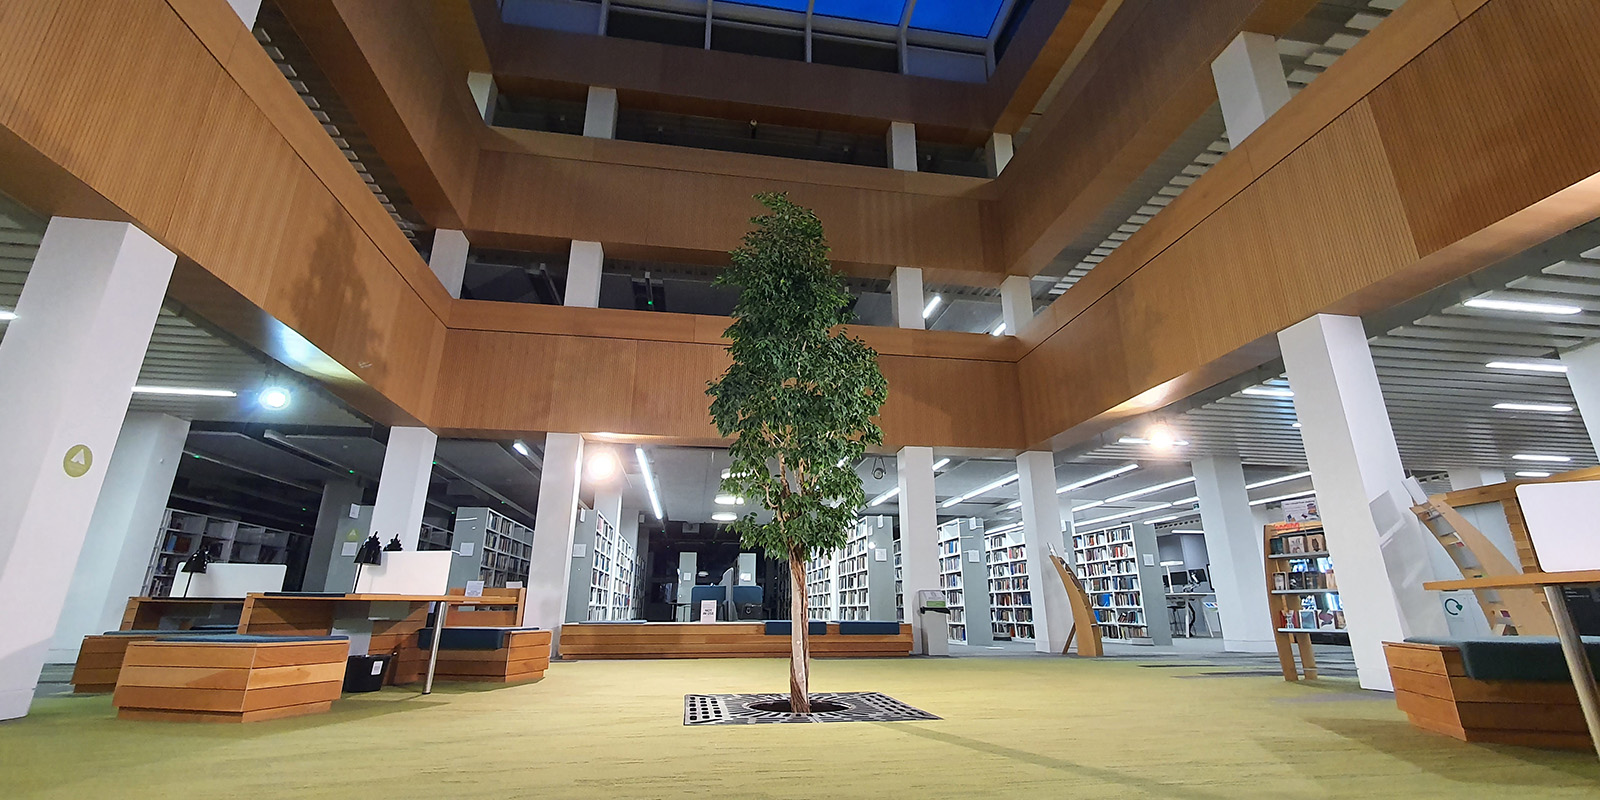 山ּ library foyer with the living tree in the centre.